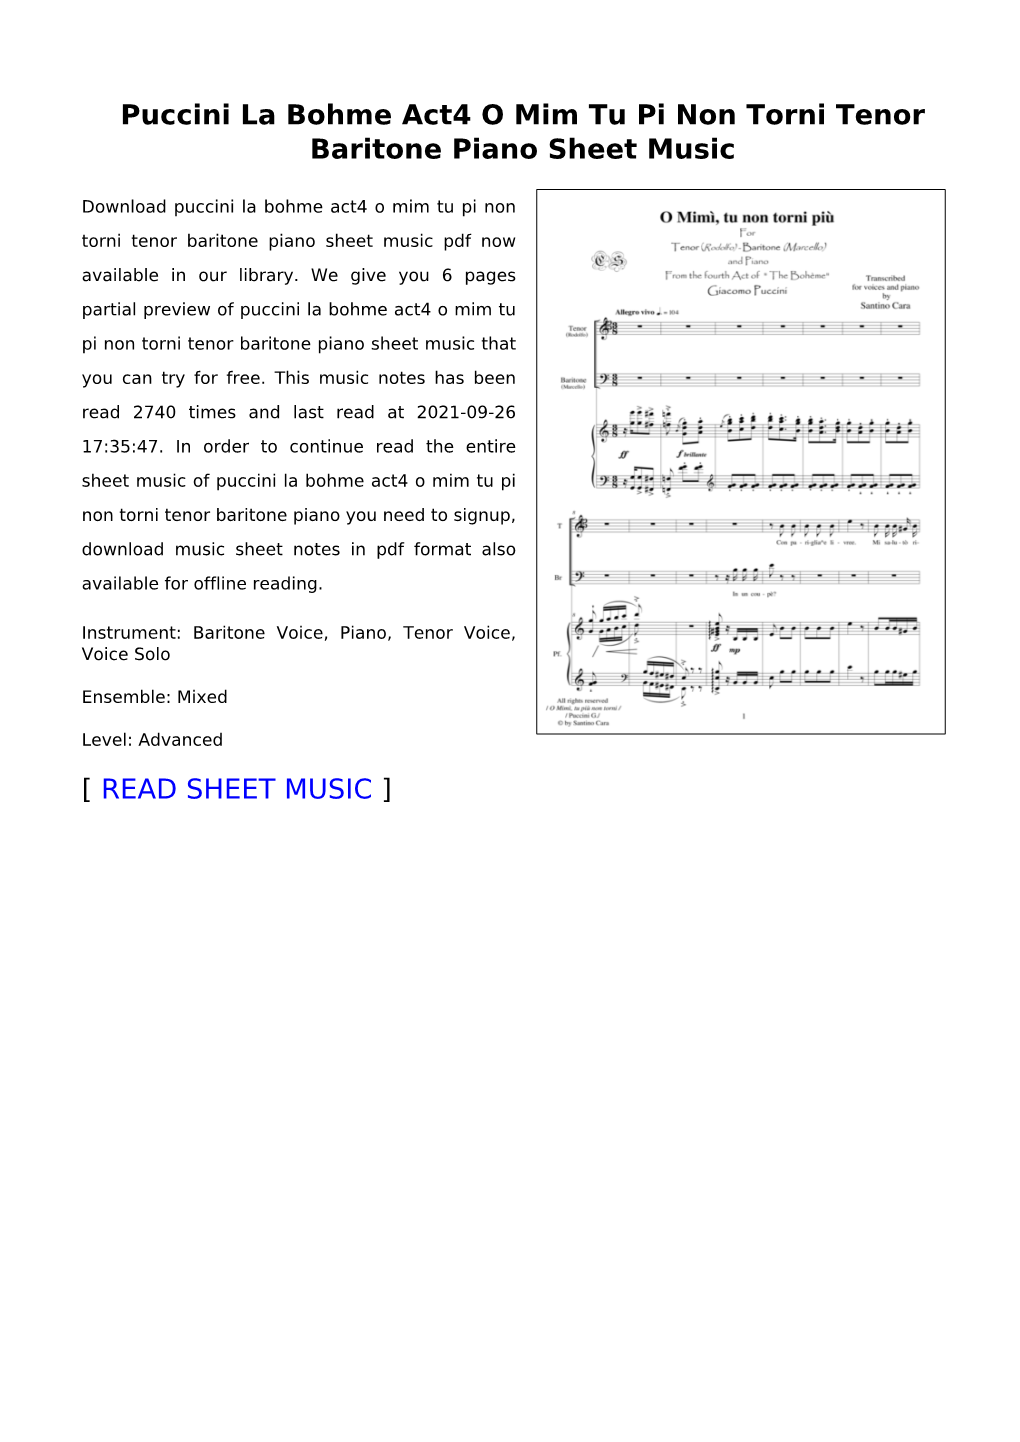 Puccini La Bohme Act4 O Mim Tu Pi Non Torni Tenor Baritone Piano Sheet Music